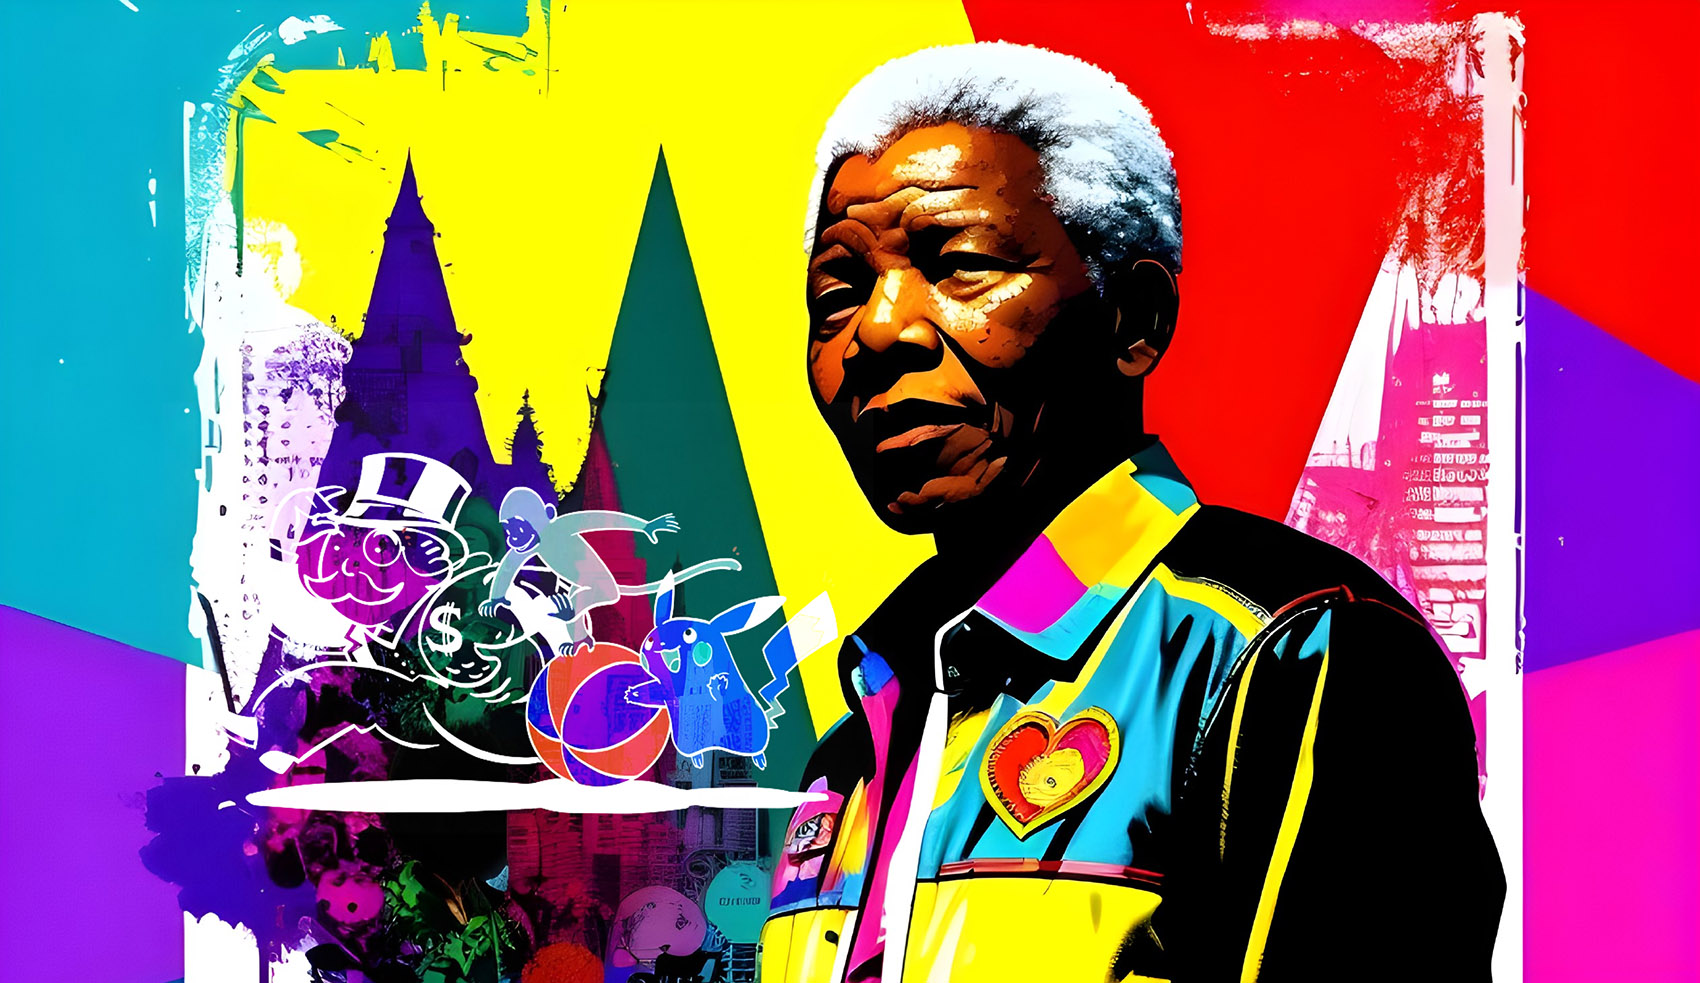 Der Mandela-Effekt: Falsche Erinnerung oder Parallelwelten?